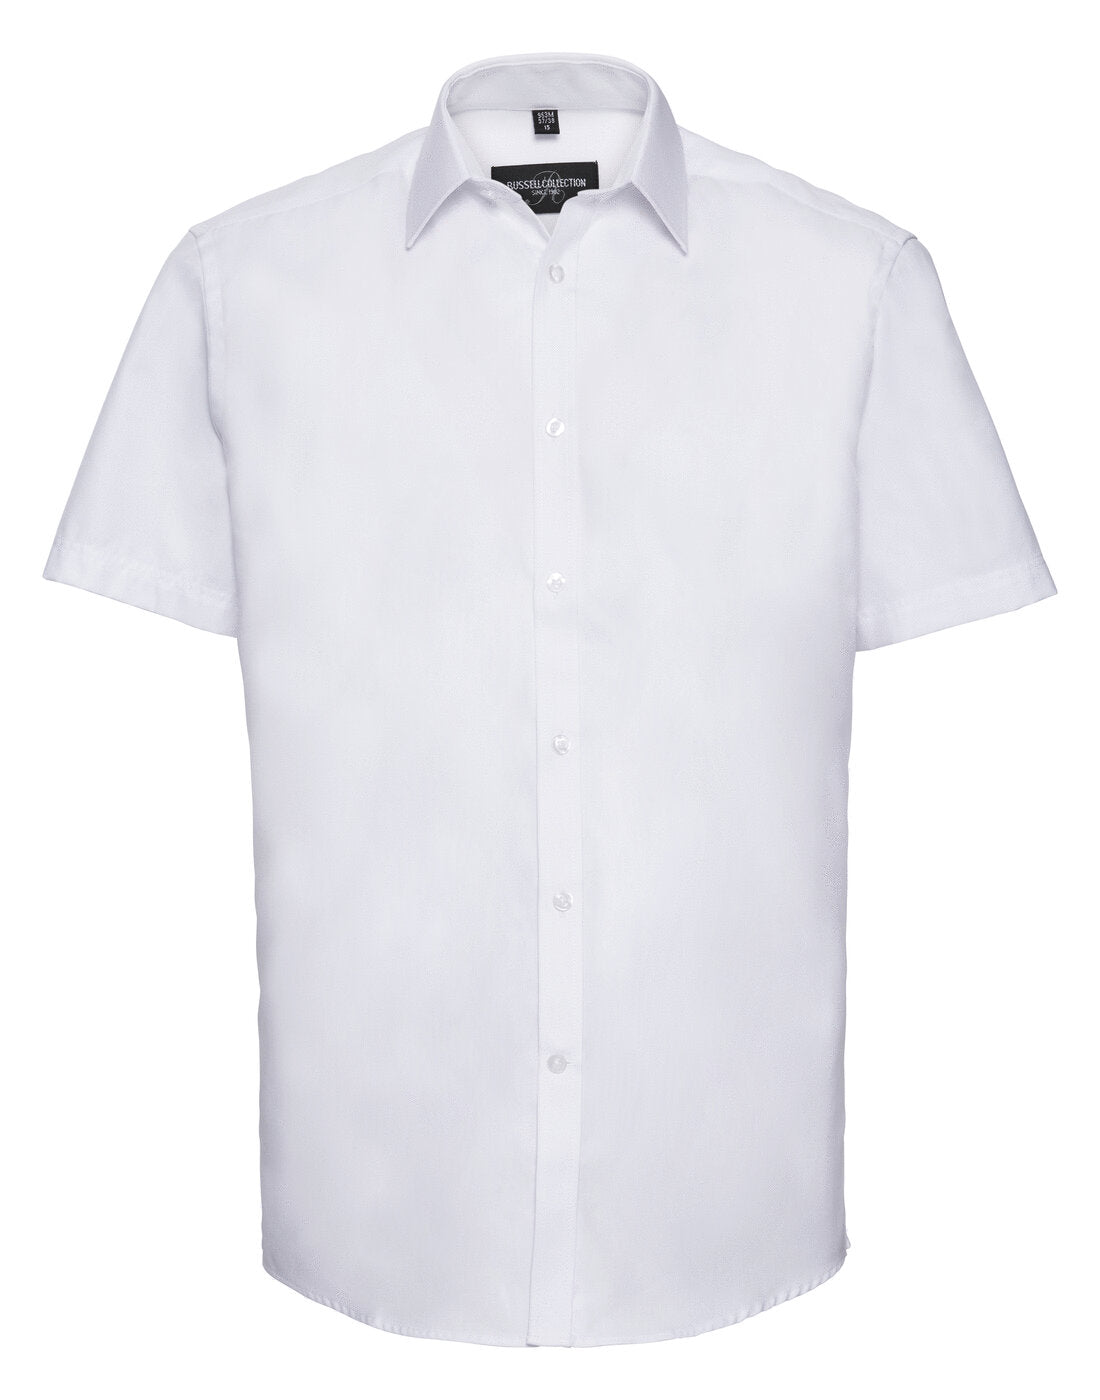 Russell Mens Short Sleeve Herringbone Shirt White